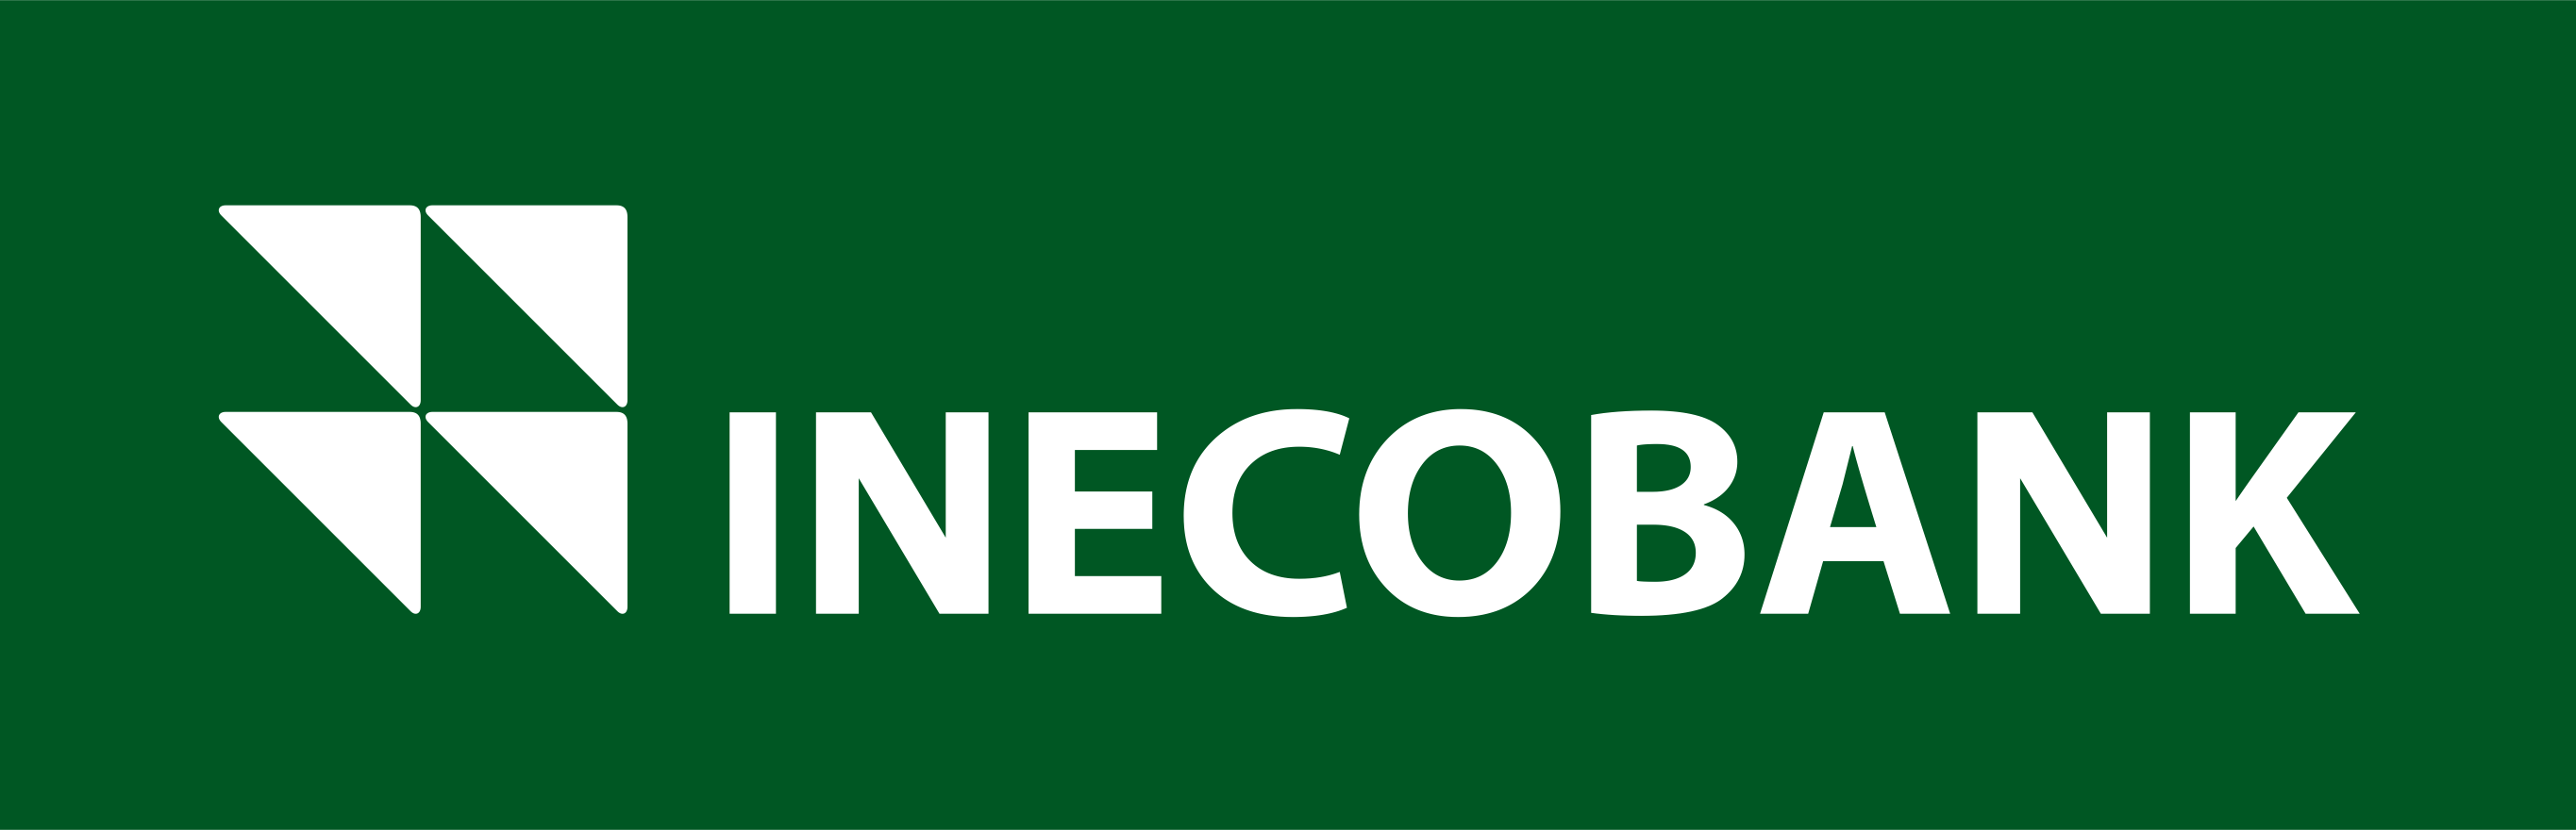 Inecobank. Инекобанк логотип. Инэко банк. Инекобанк армения